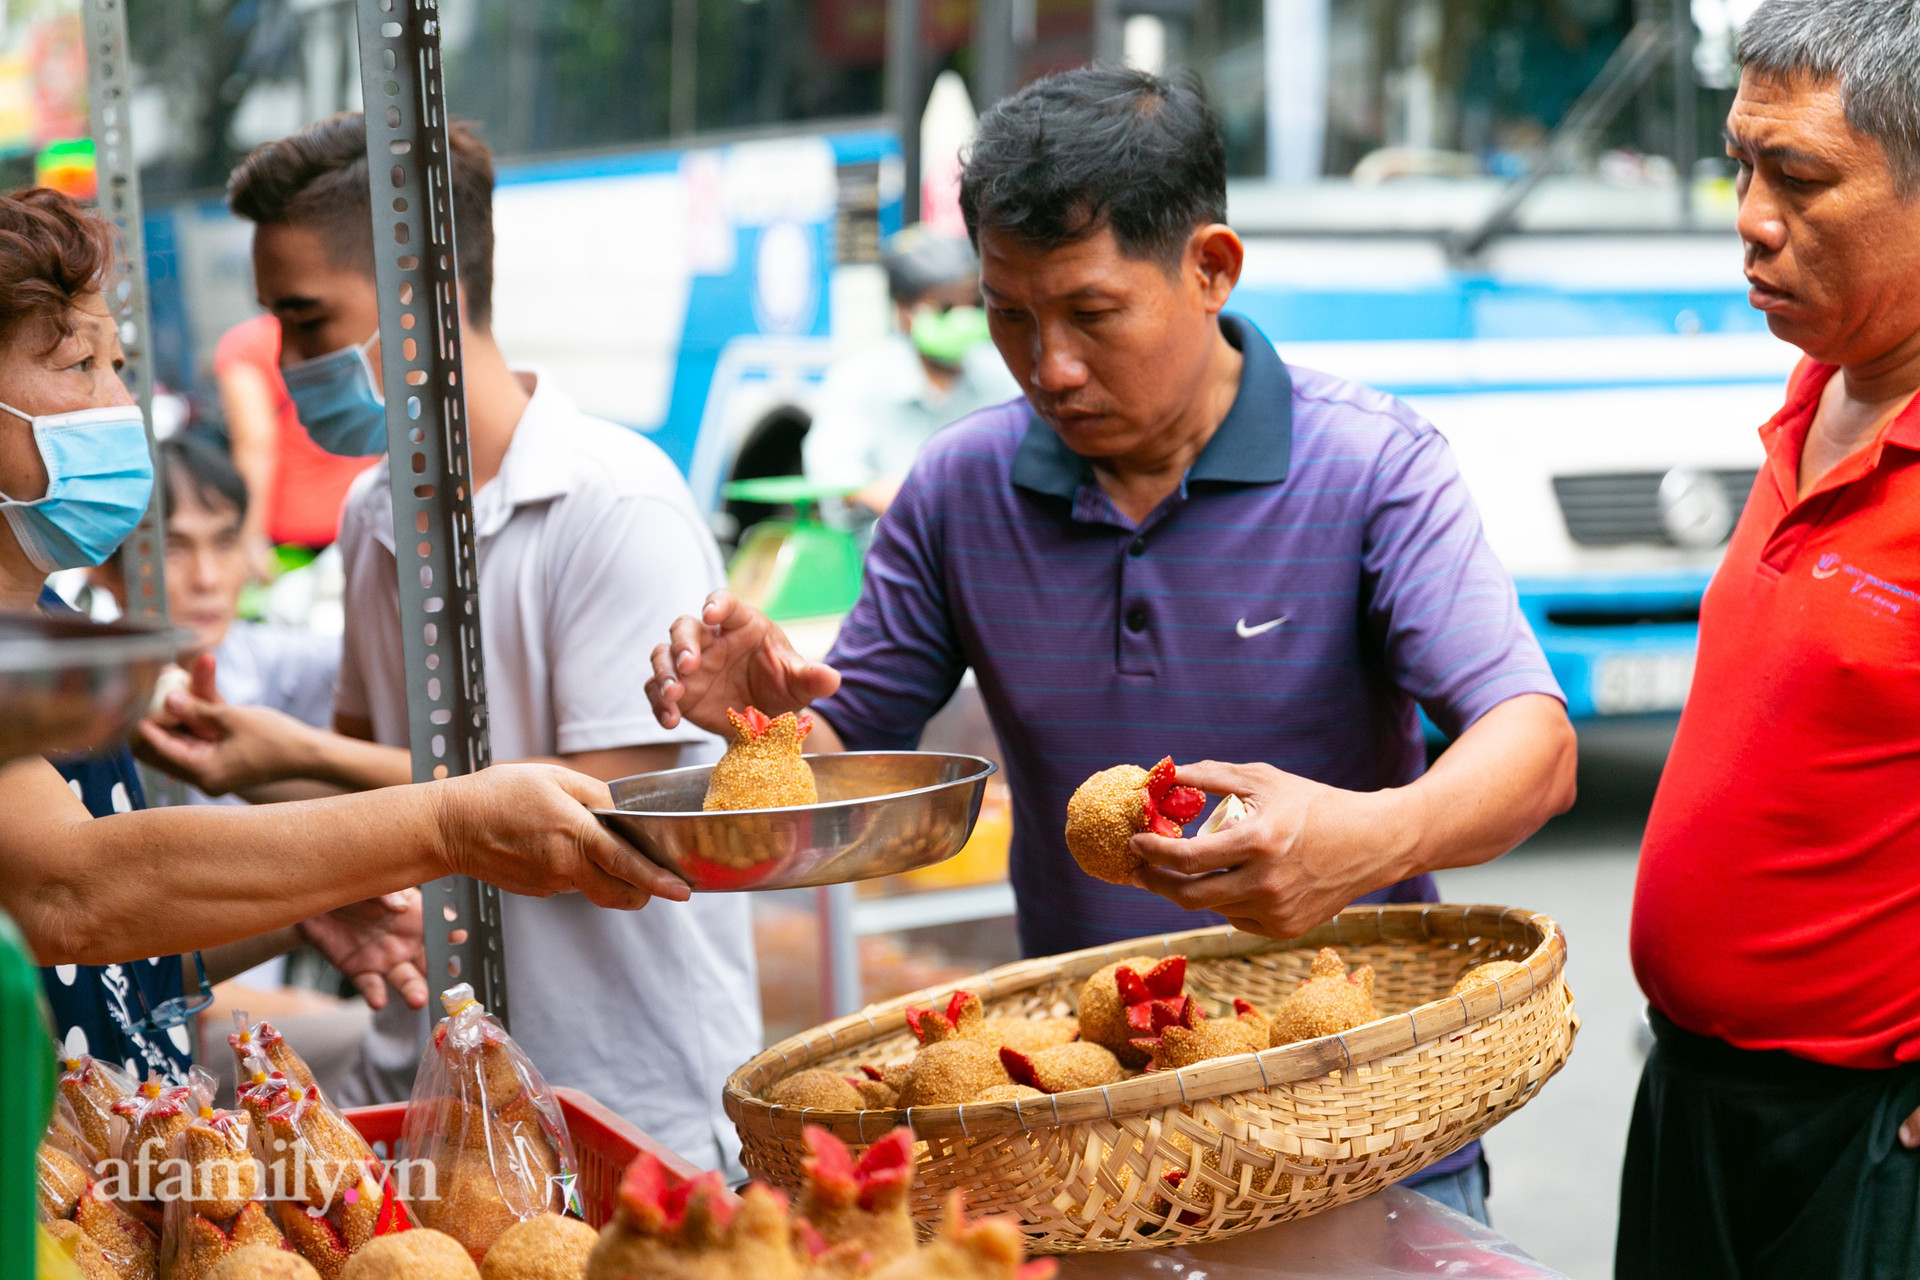 Độc đáo bánh lựu cầu duyên truyền thống của người Hoa ở Sài Gòn: Chỉ bán duy nhất một lần trong năm, 4 người phụ làm hơn 1.000 cái mà bán sạch trong 1 tiếng - Ảnh 29.